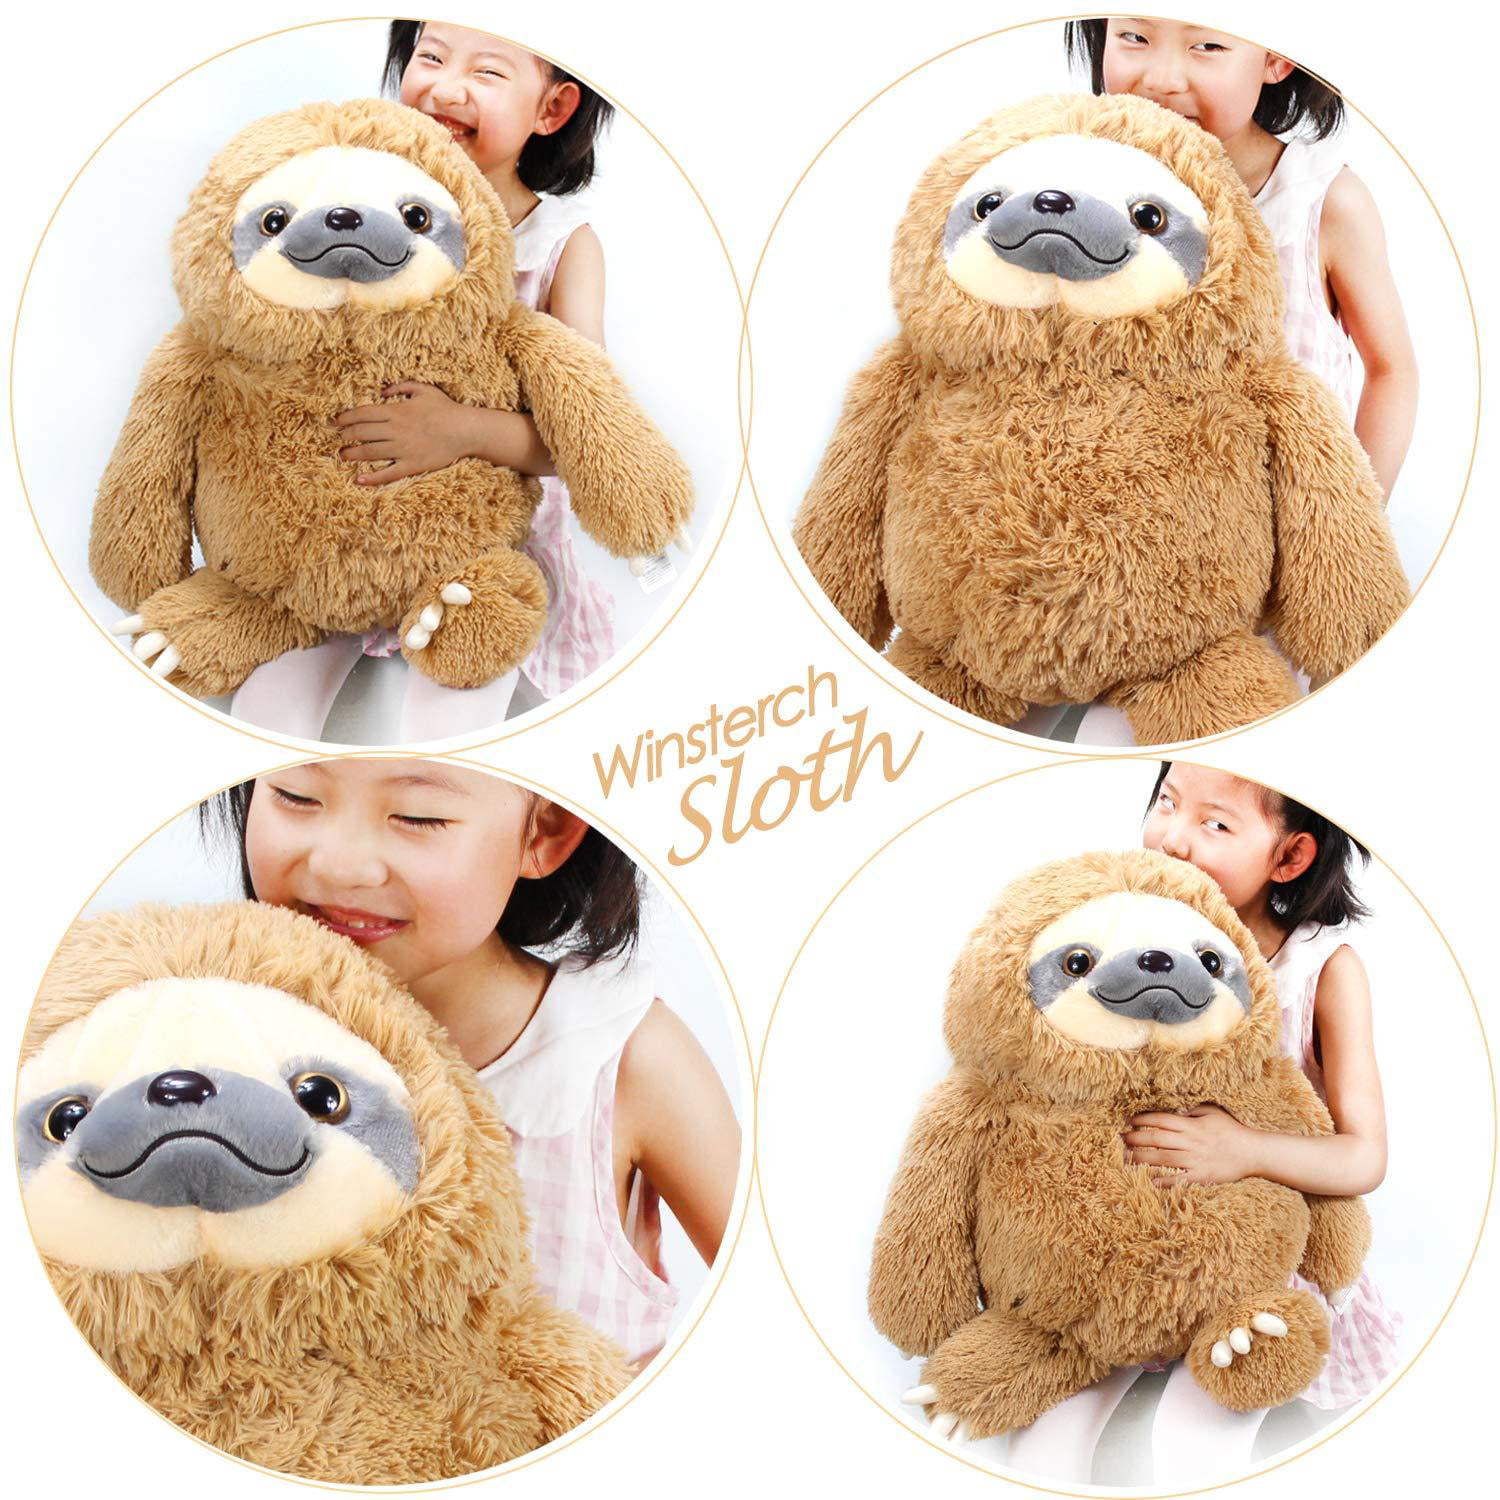 Boyle Craftholic Rainy Sloth Stuff Toy Children Gift Plushie Bear Small 